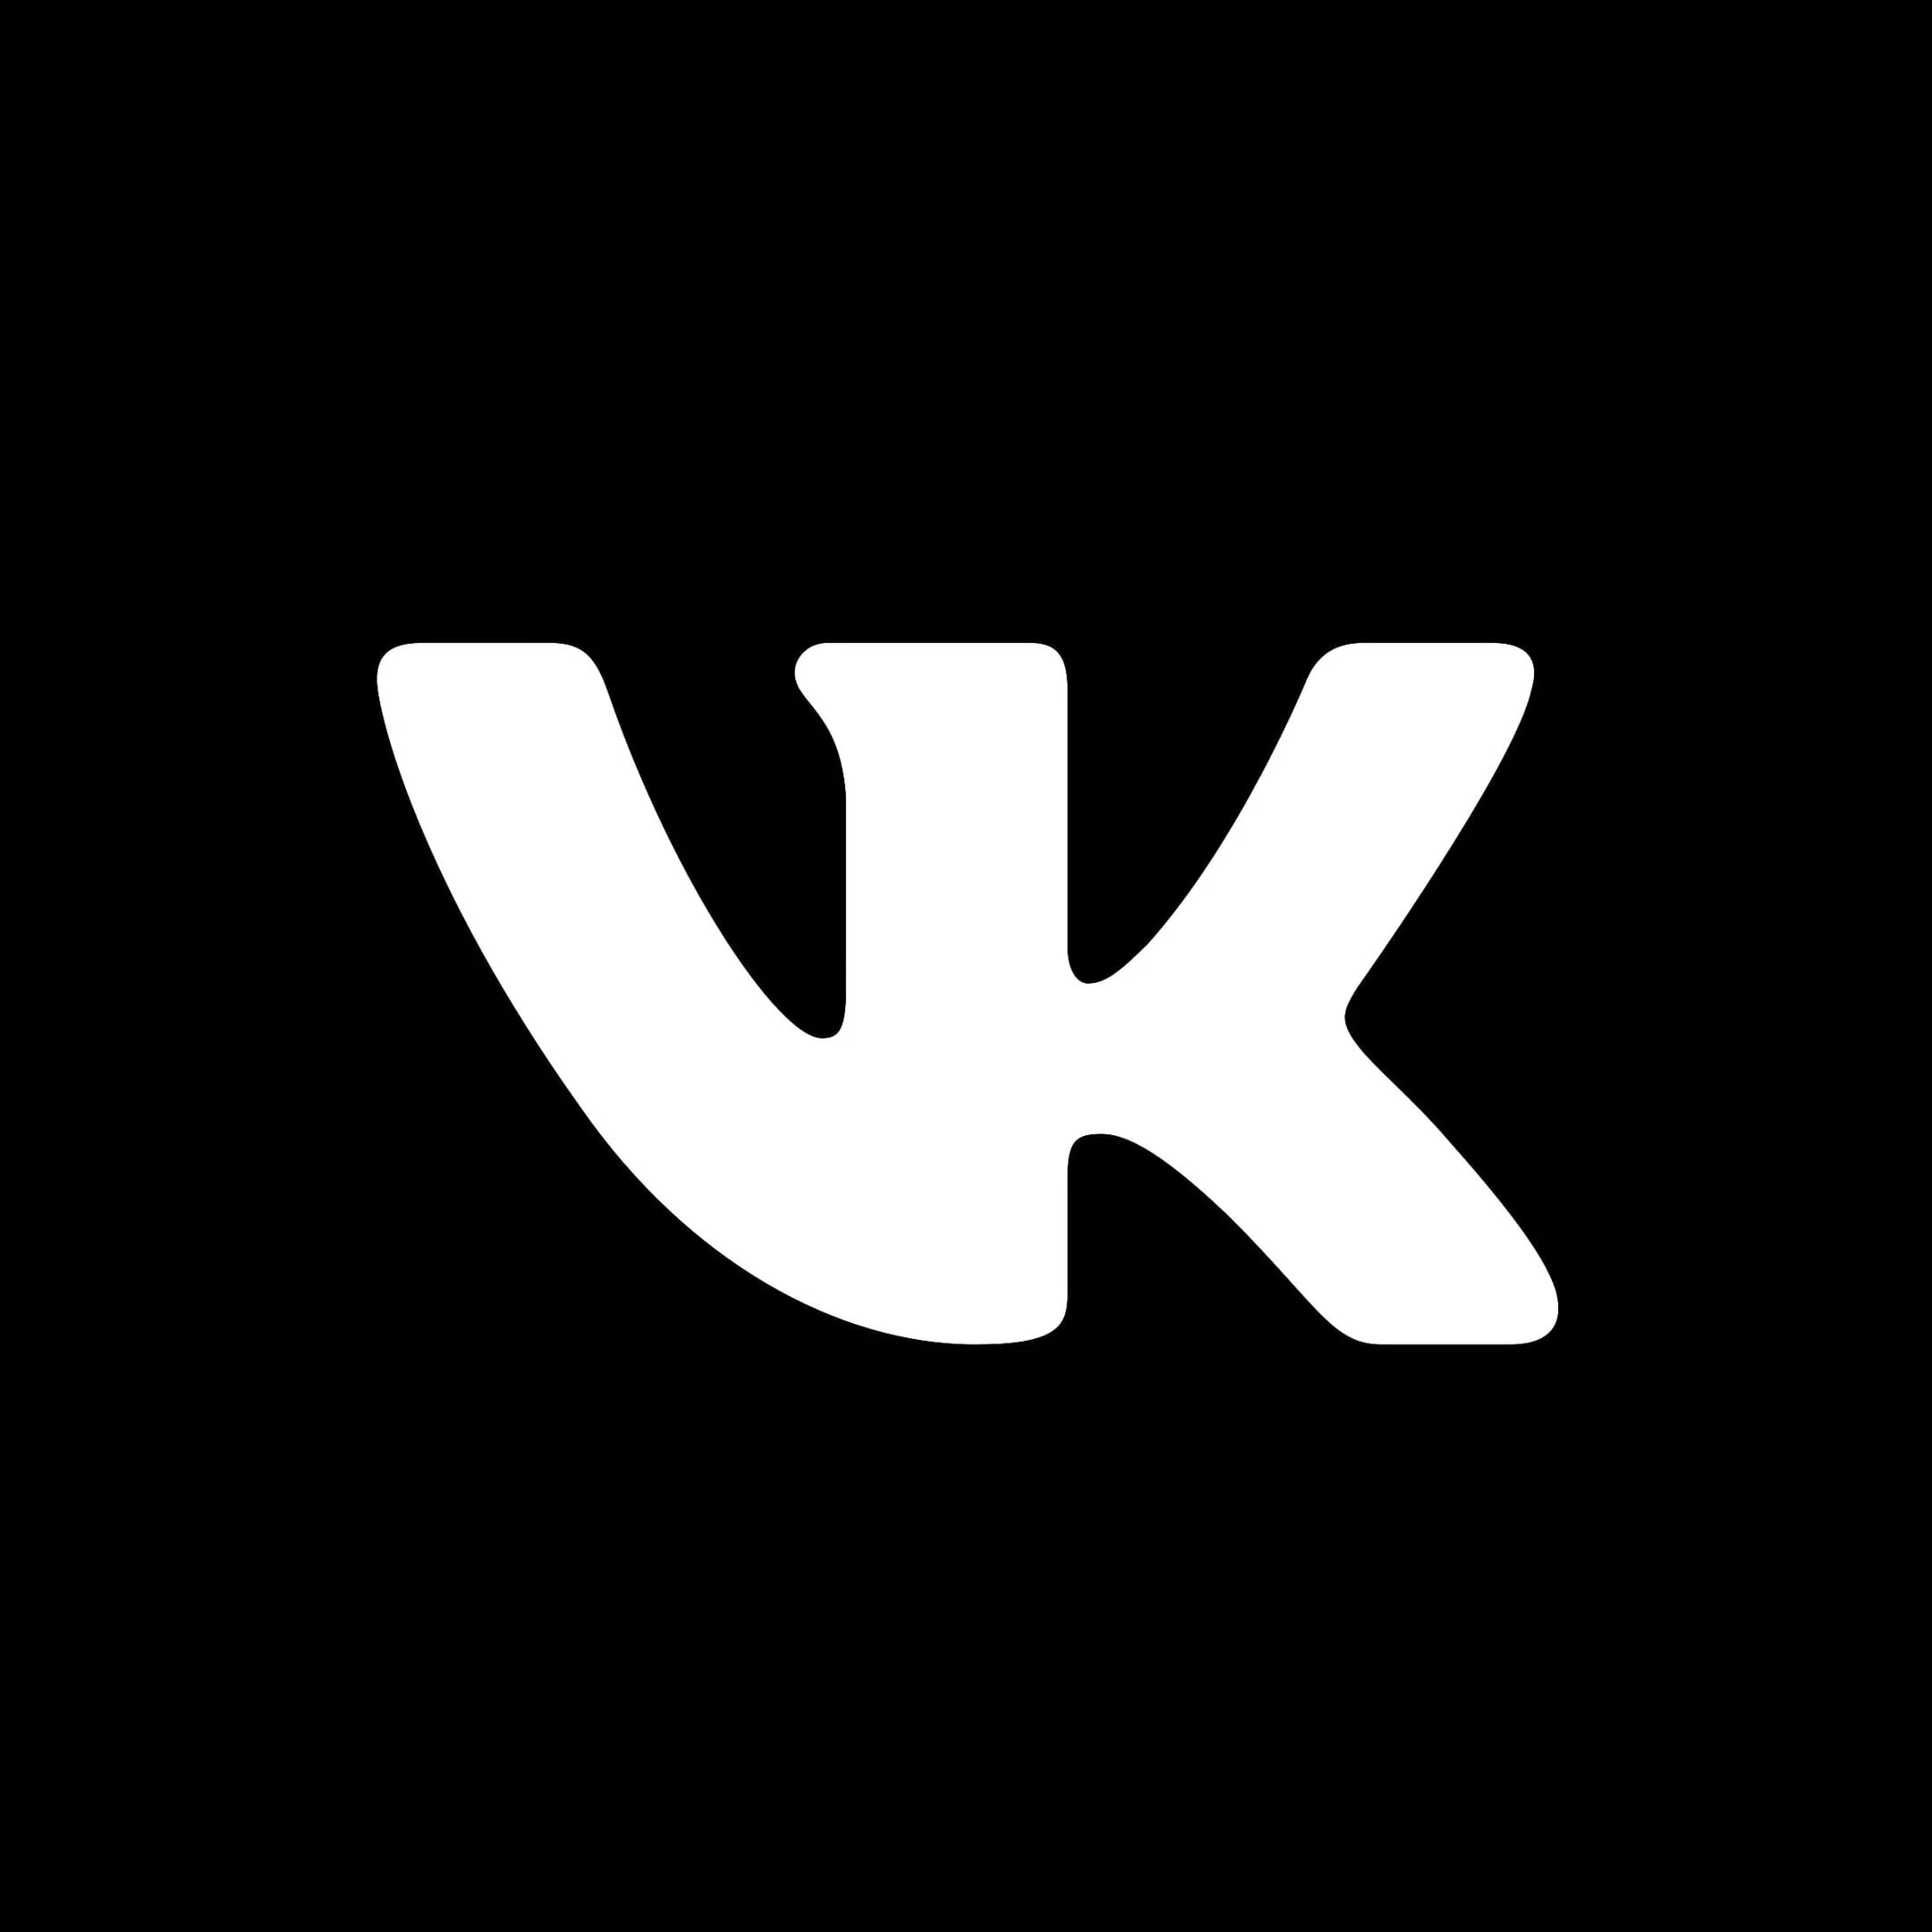 Vk com verniy put. ВК лого. Значок ВК вектор. Значок ВК черный. Значок ВК белый.